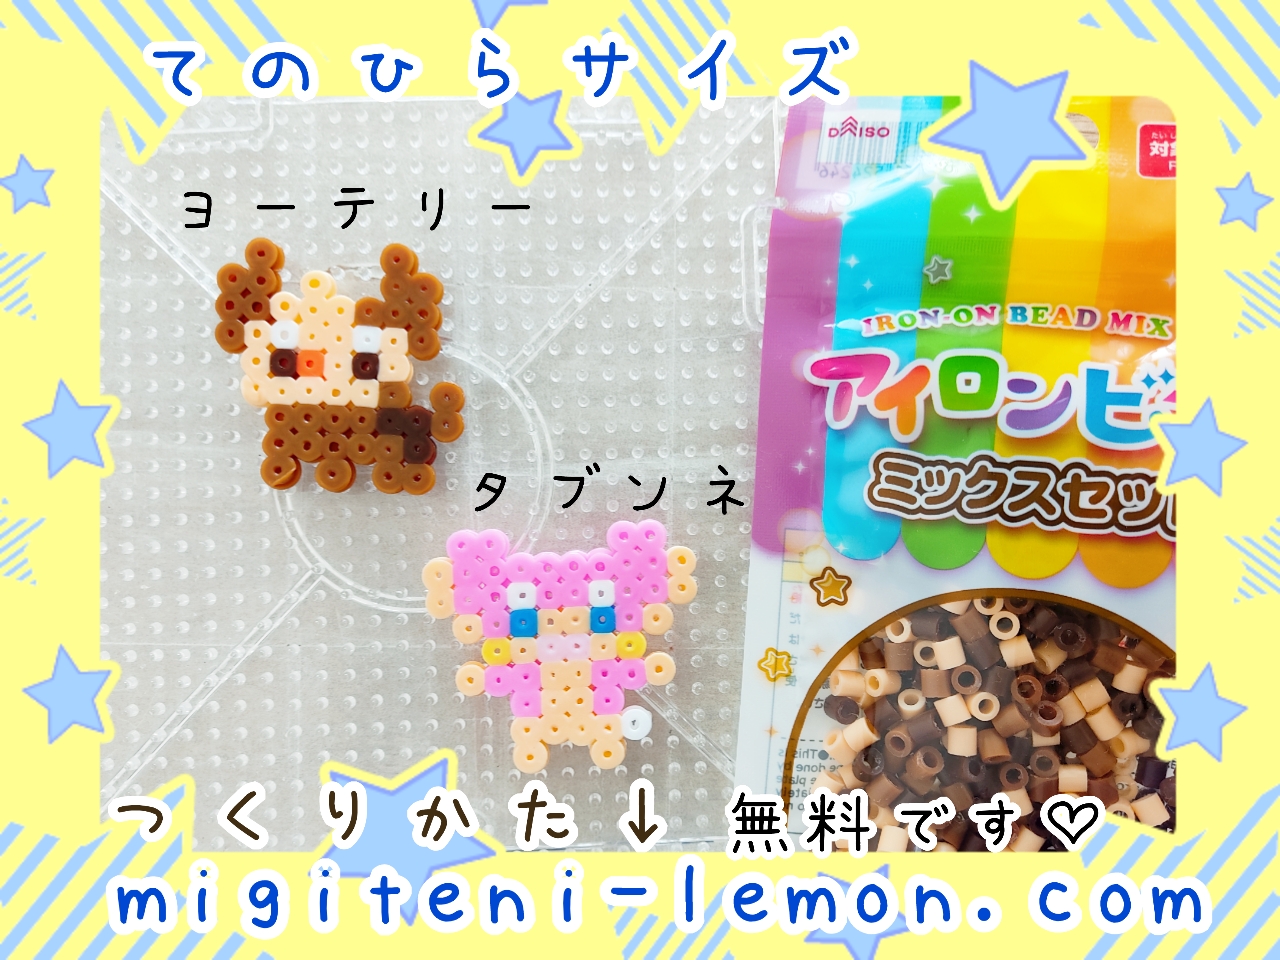 tabunne-audino-yorterrie-lillipup-pokemon-unite-iron-beads-handmade-daiso-free-zuan-square